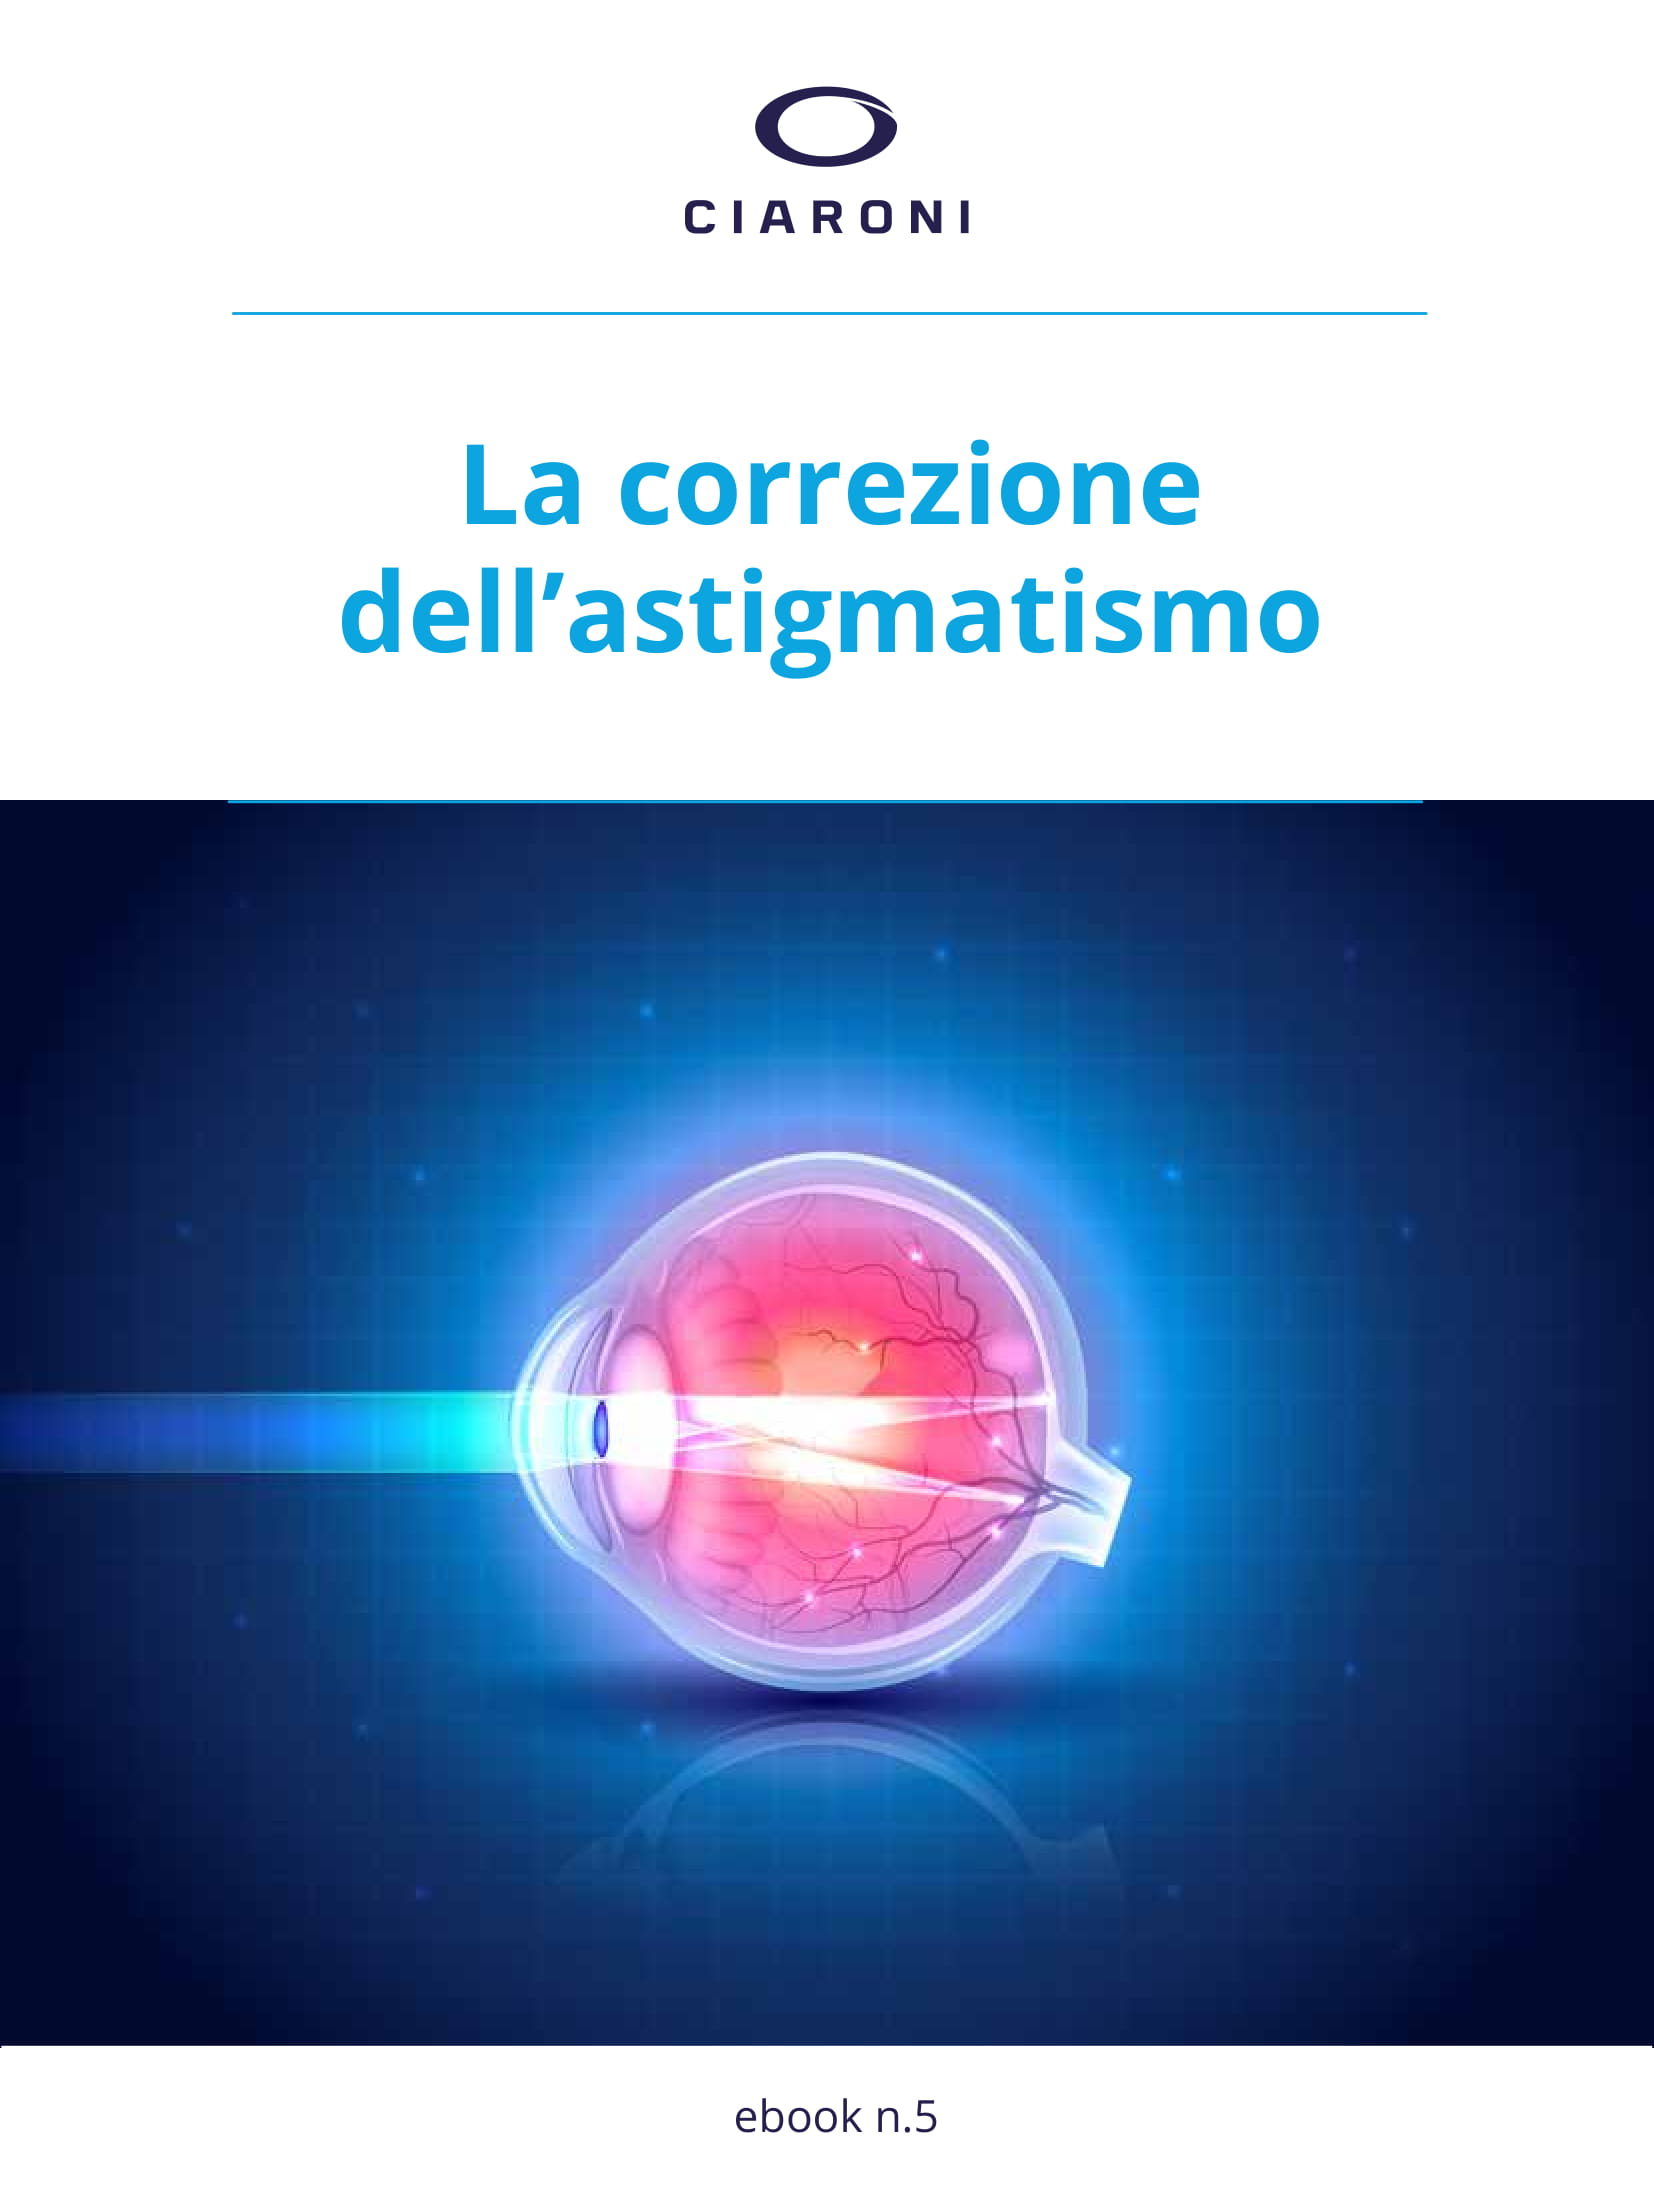 Ciaroni-ebook-La correzione dell'astigmatismo